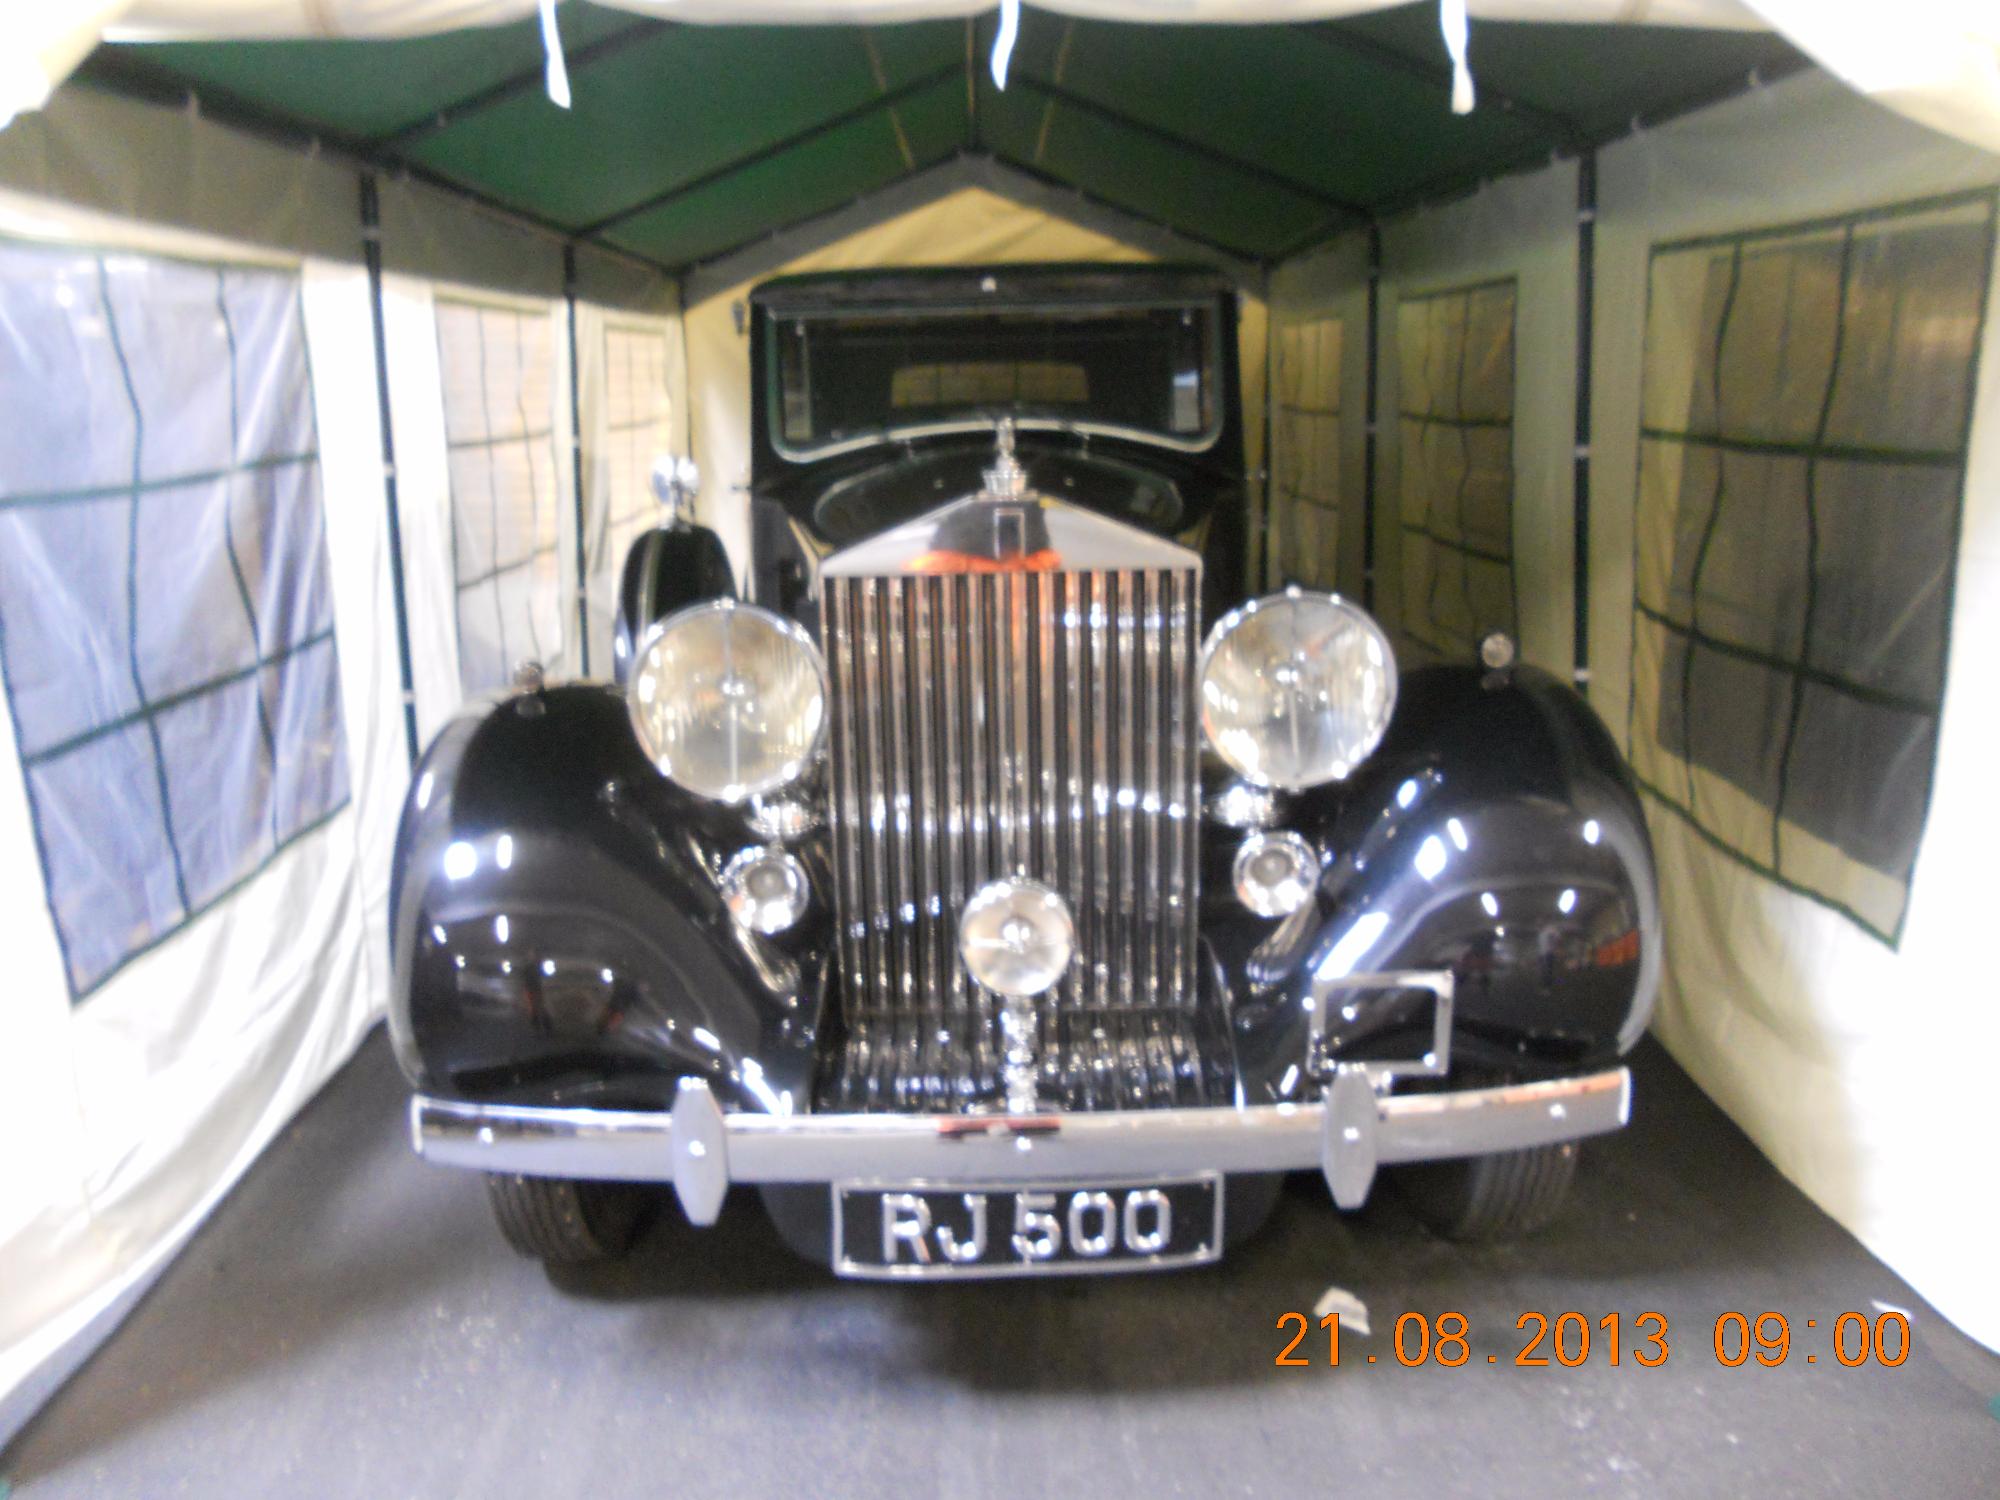 1937 Rolls-Royce Phantom III